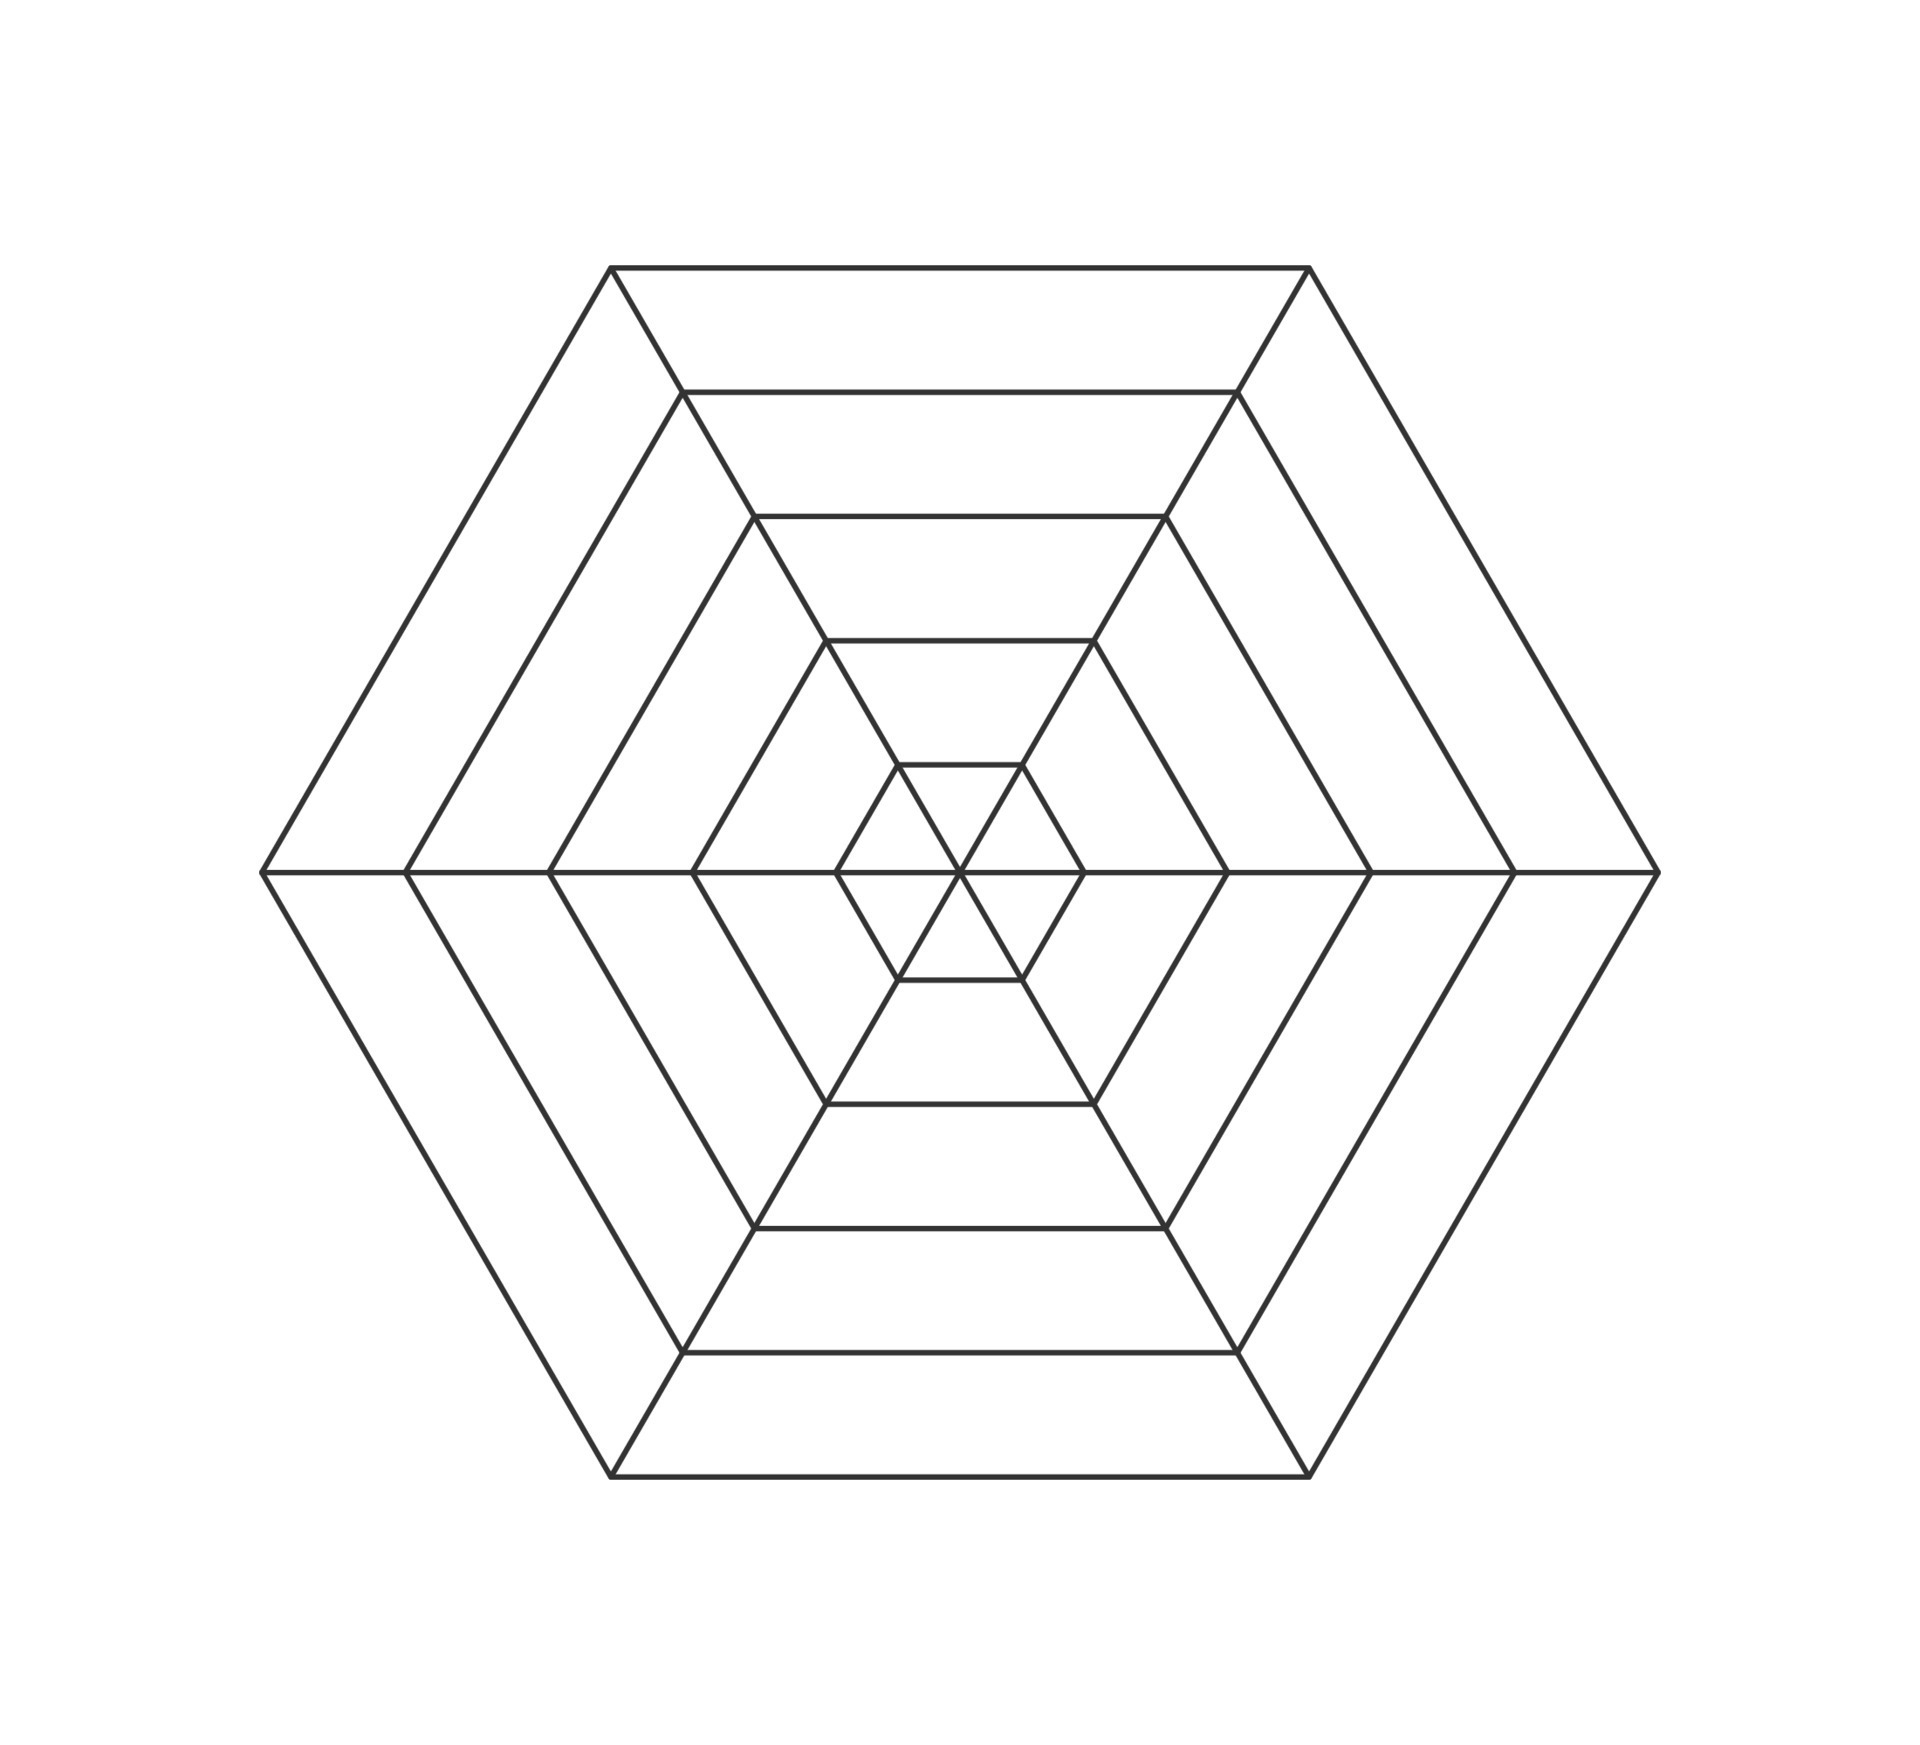 Hexagonal radar or spider diagram template. Hexagon graph